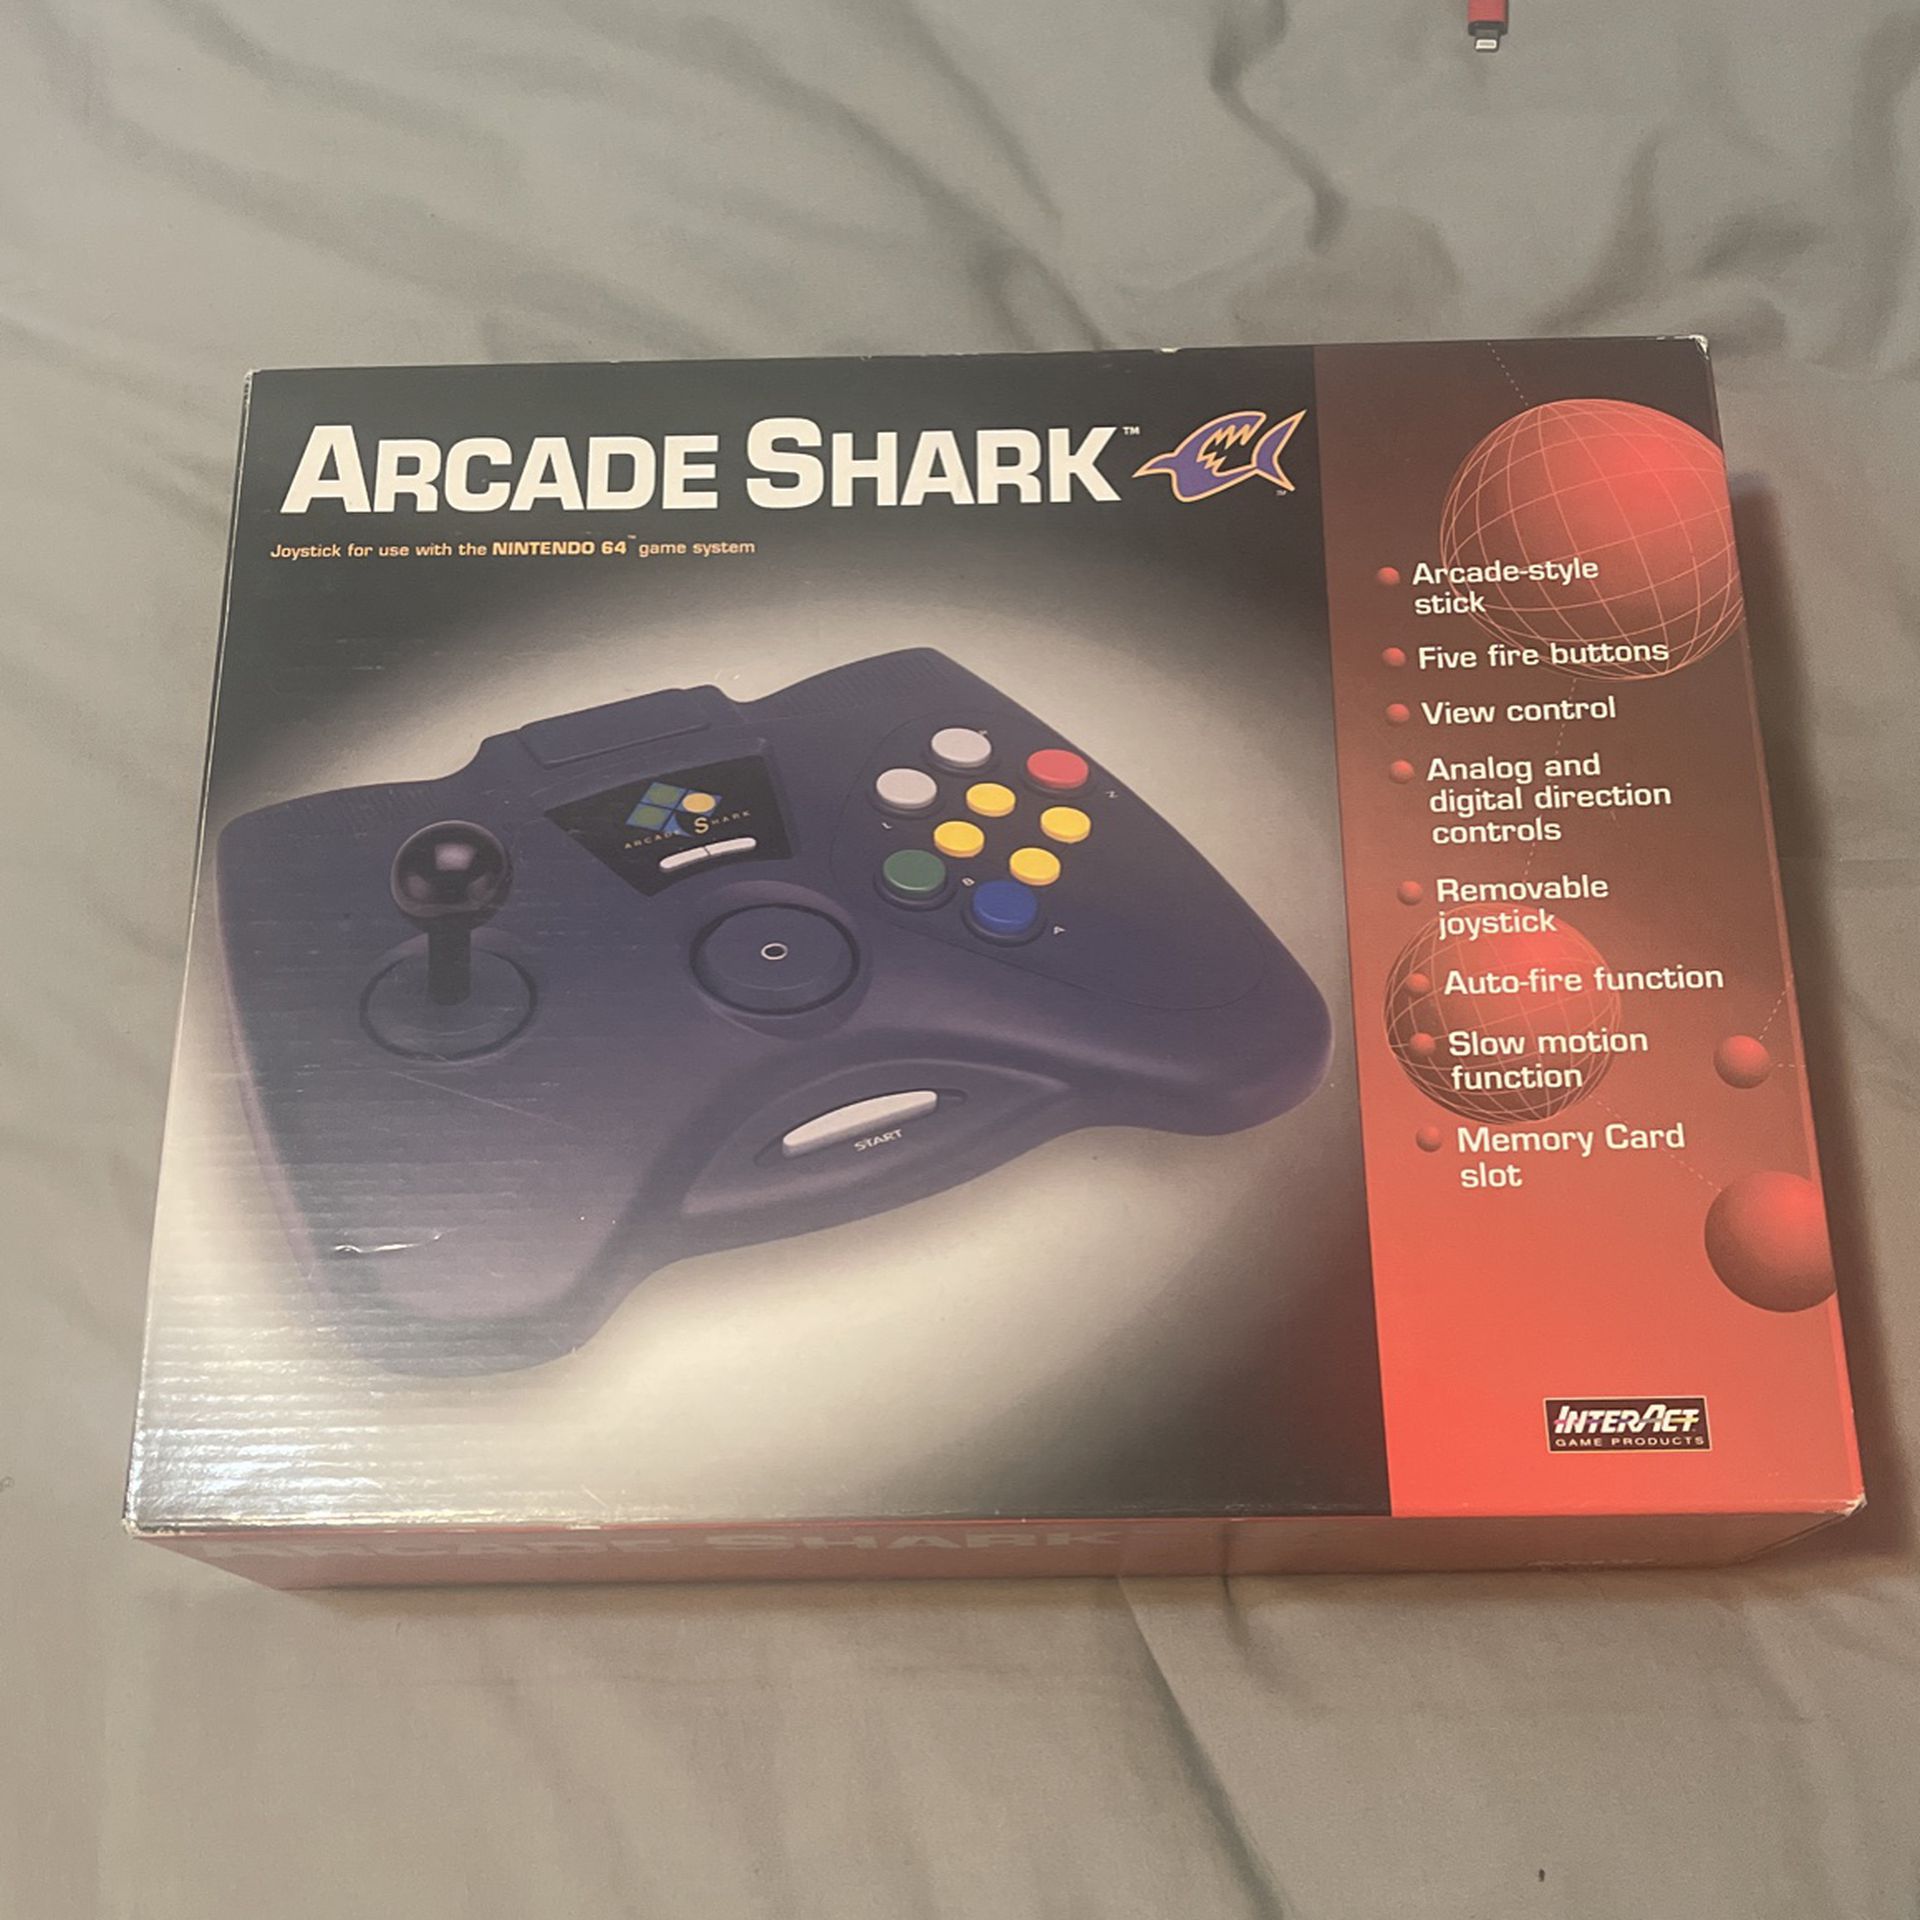 Arcade shark joystick for a Nintendo, 64